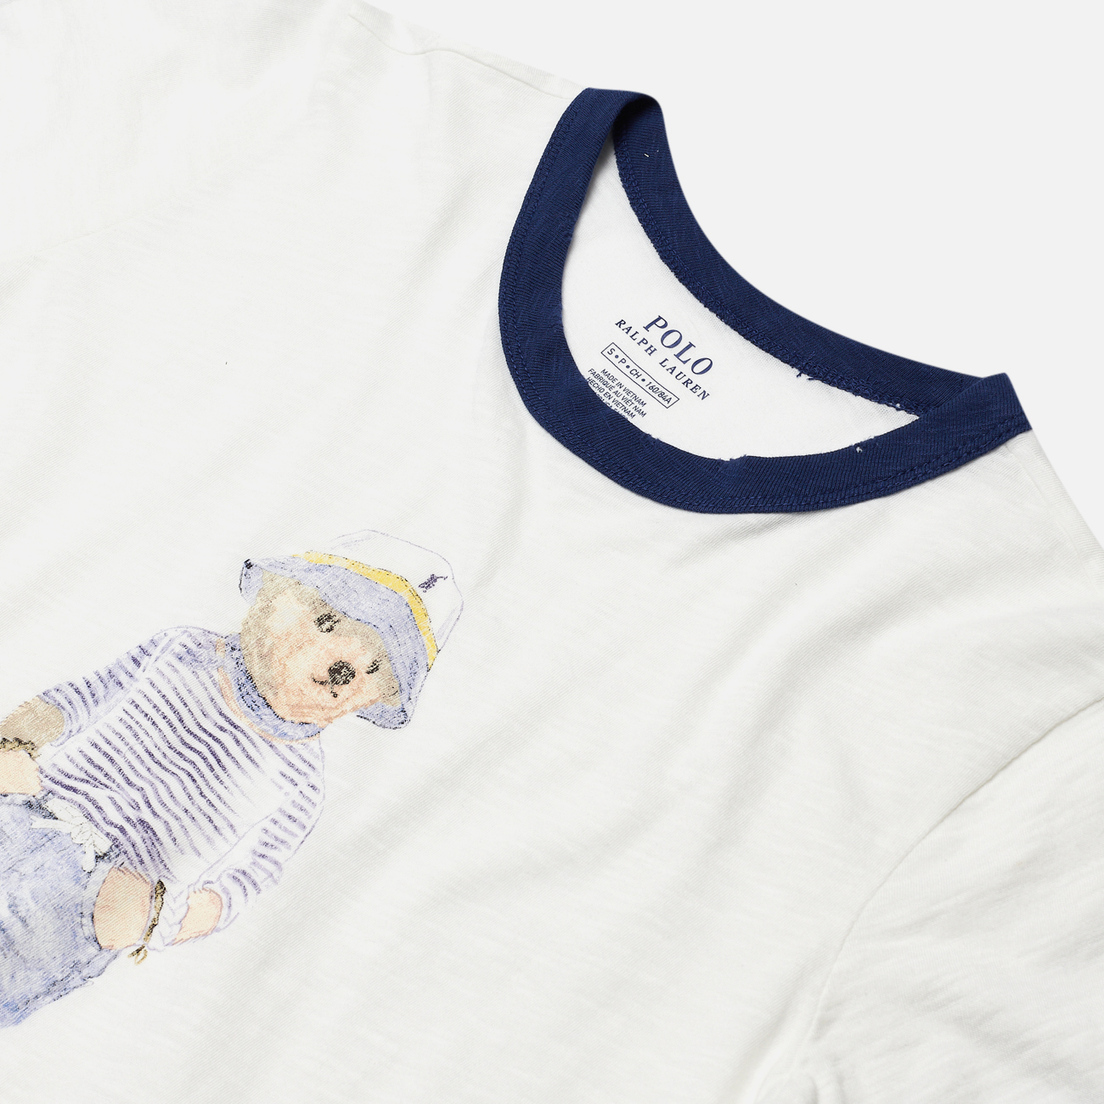 Polo Ralph Lauren Женская футболка Bear 30/'S Uneven Cotton Jersey